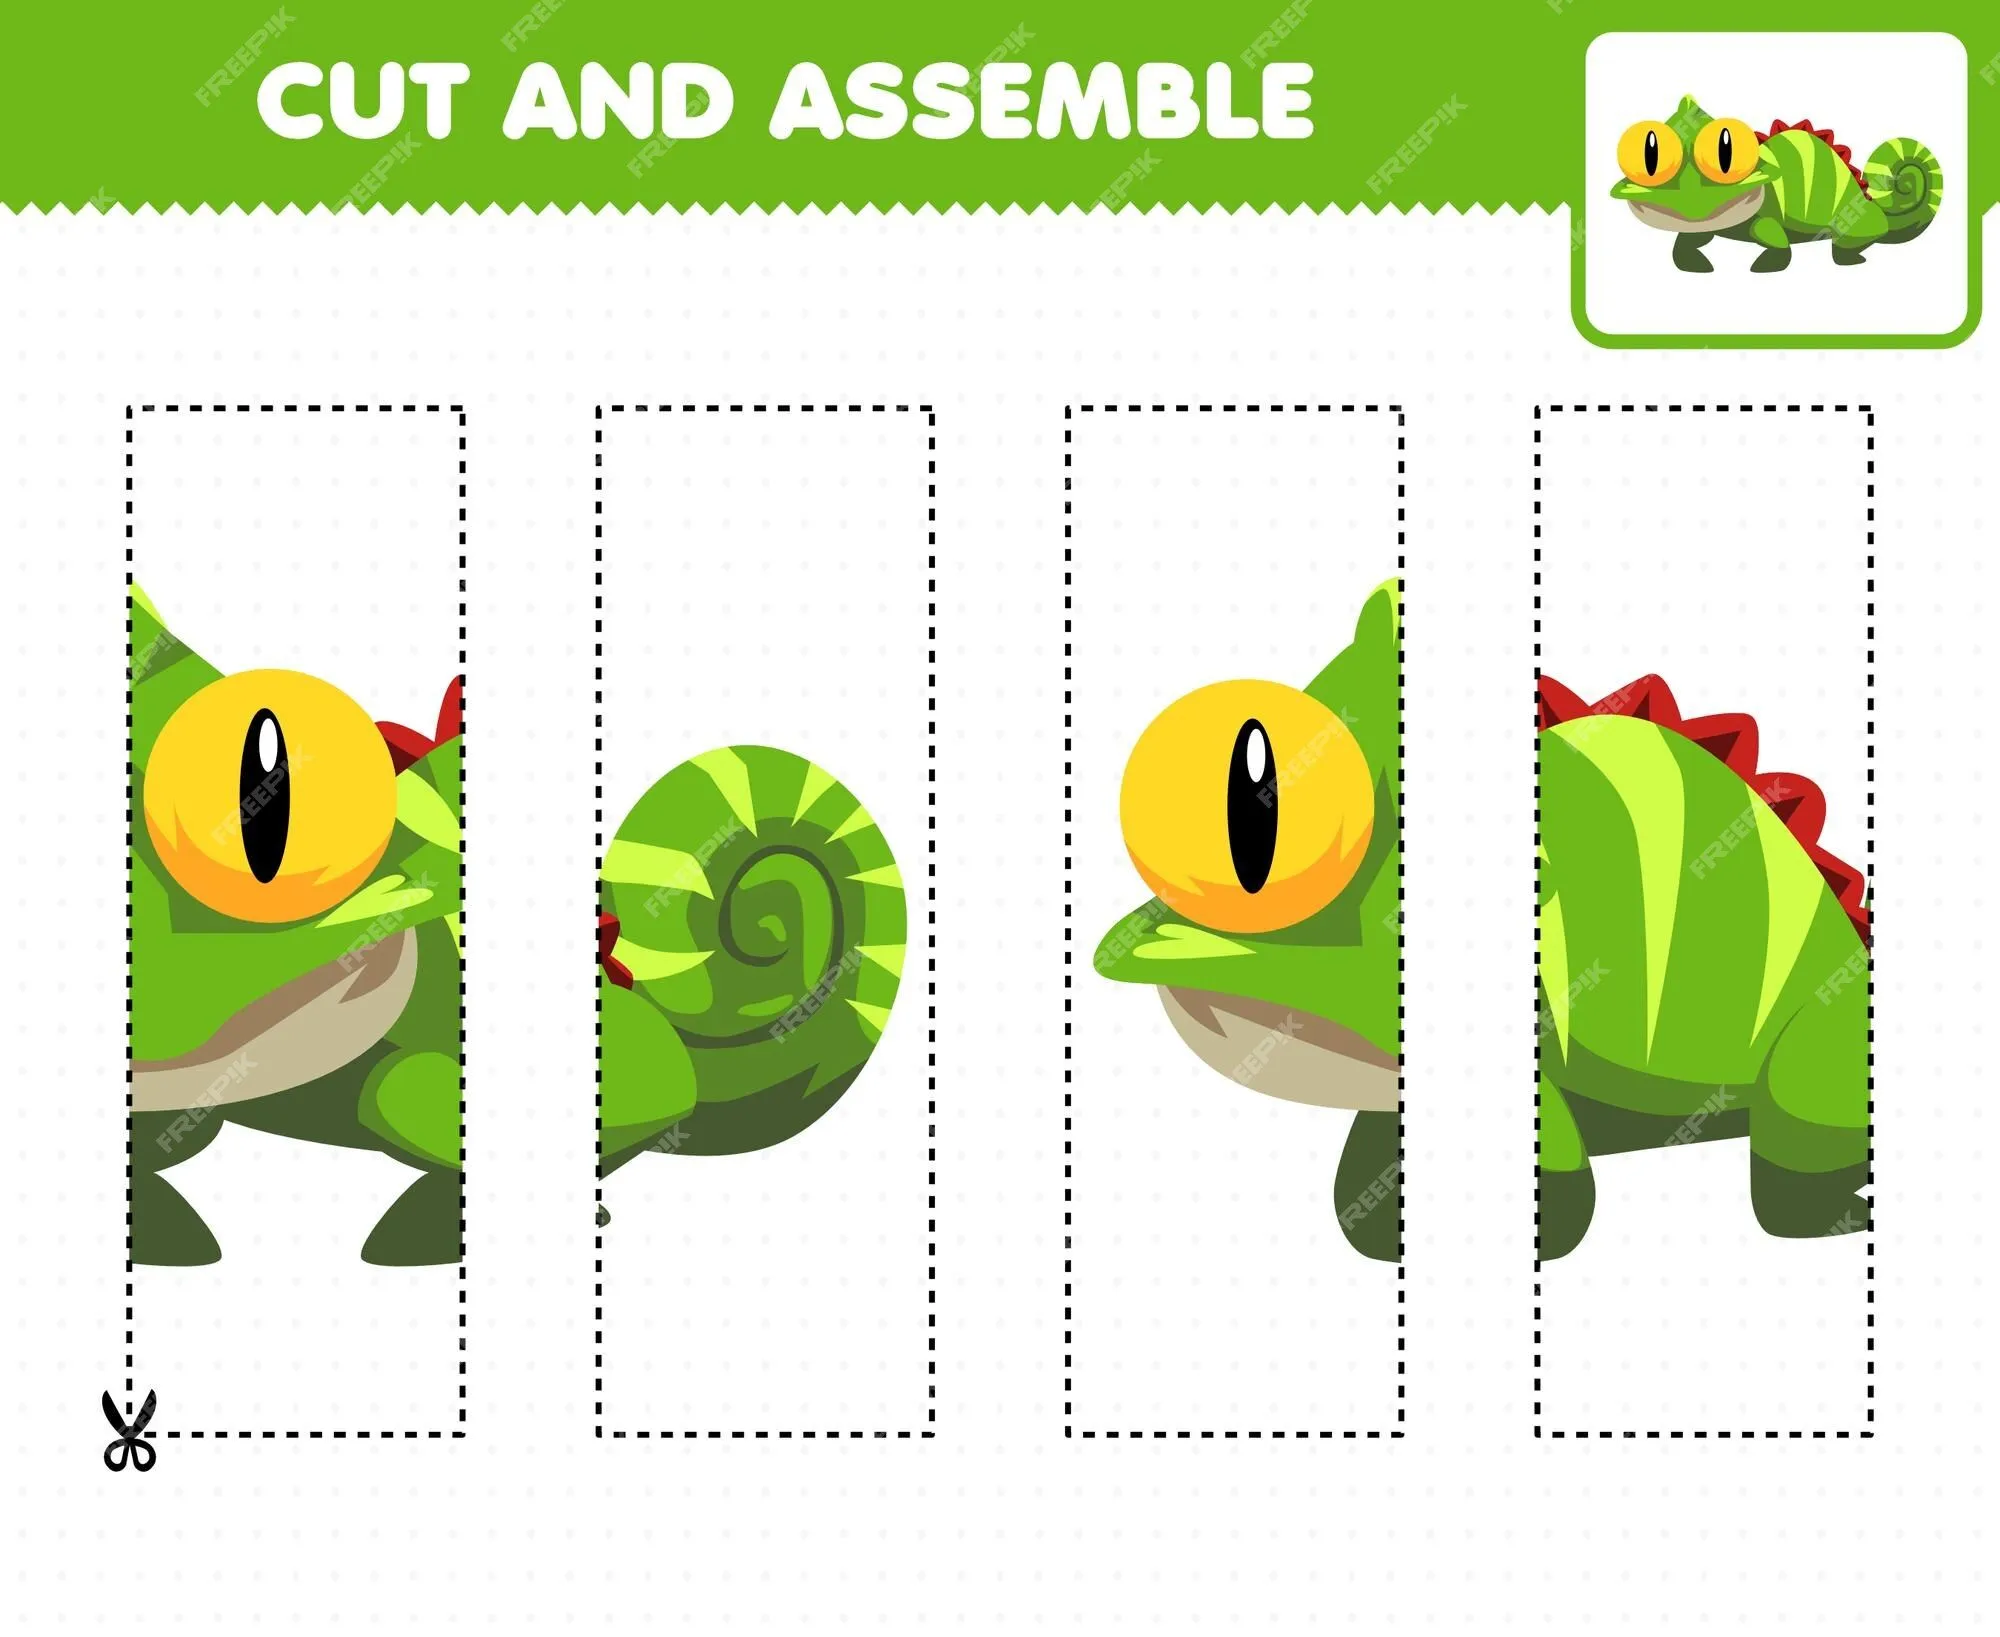 Juego educativo para niños, práctica de corte y ensamblaje de rompecabezas  con linda iguana animal de dibujos animados | Vector Premium